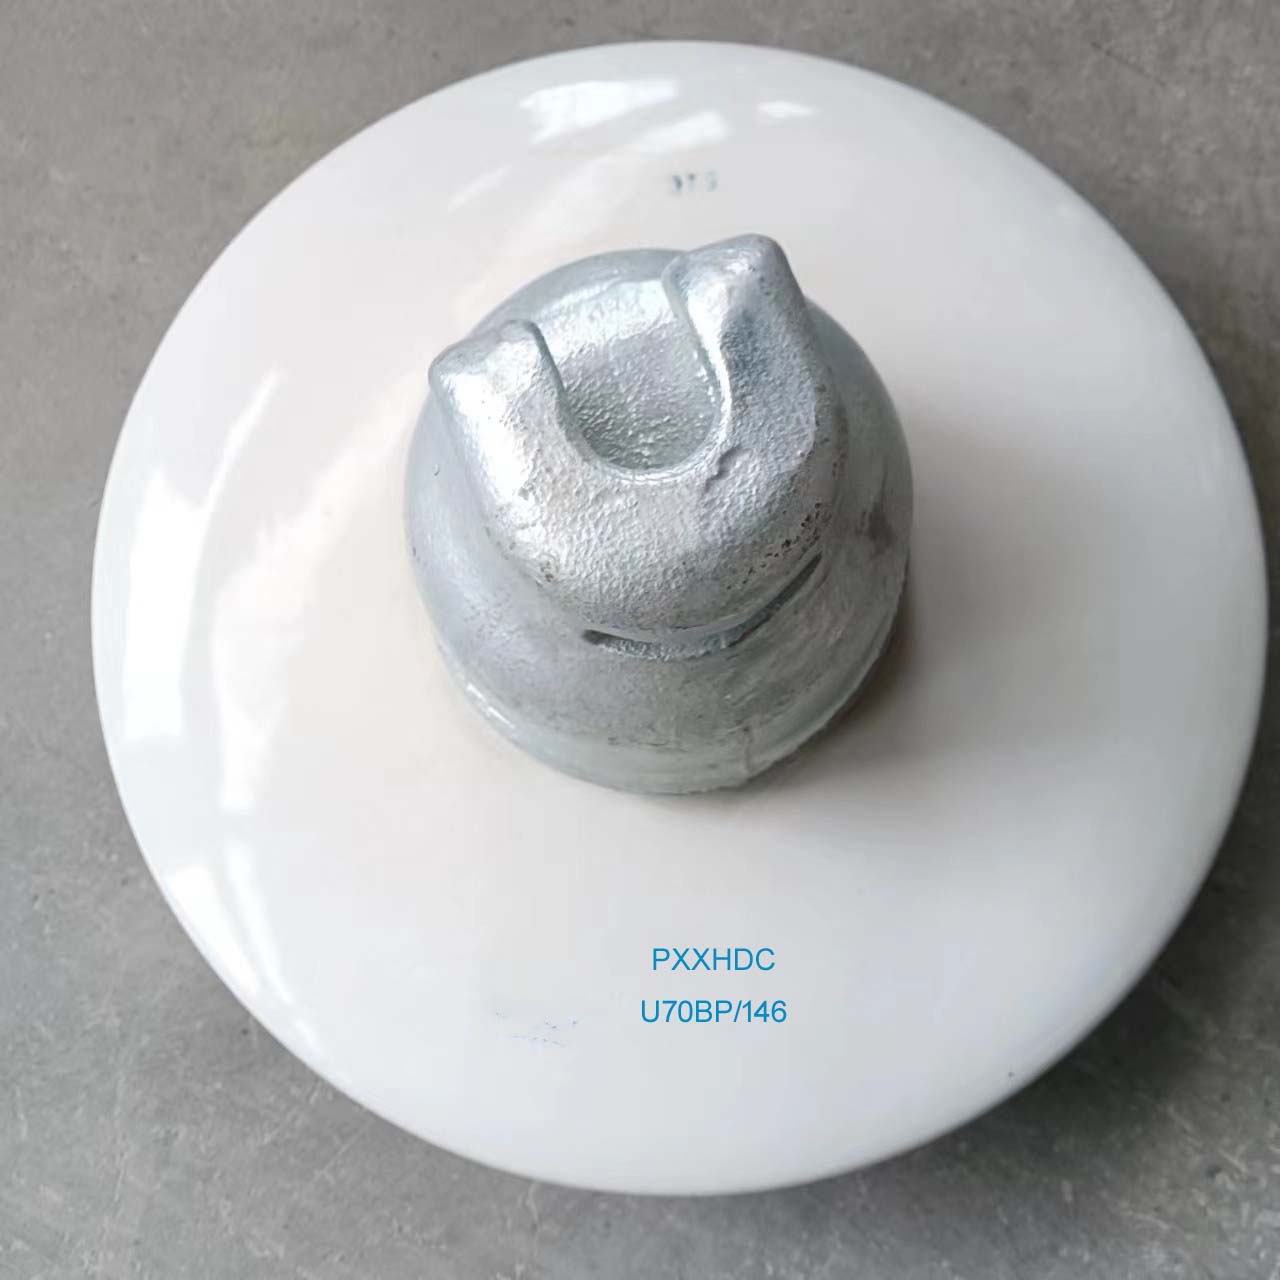 Product name: U70BP/146 anti-pollution suspension disc suspension insulator Featured Image